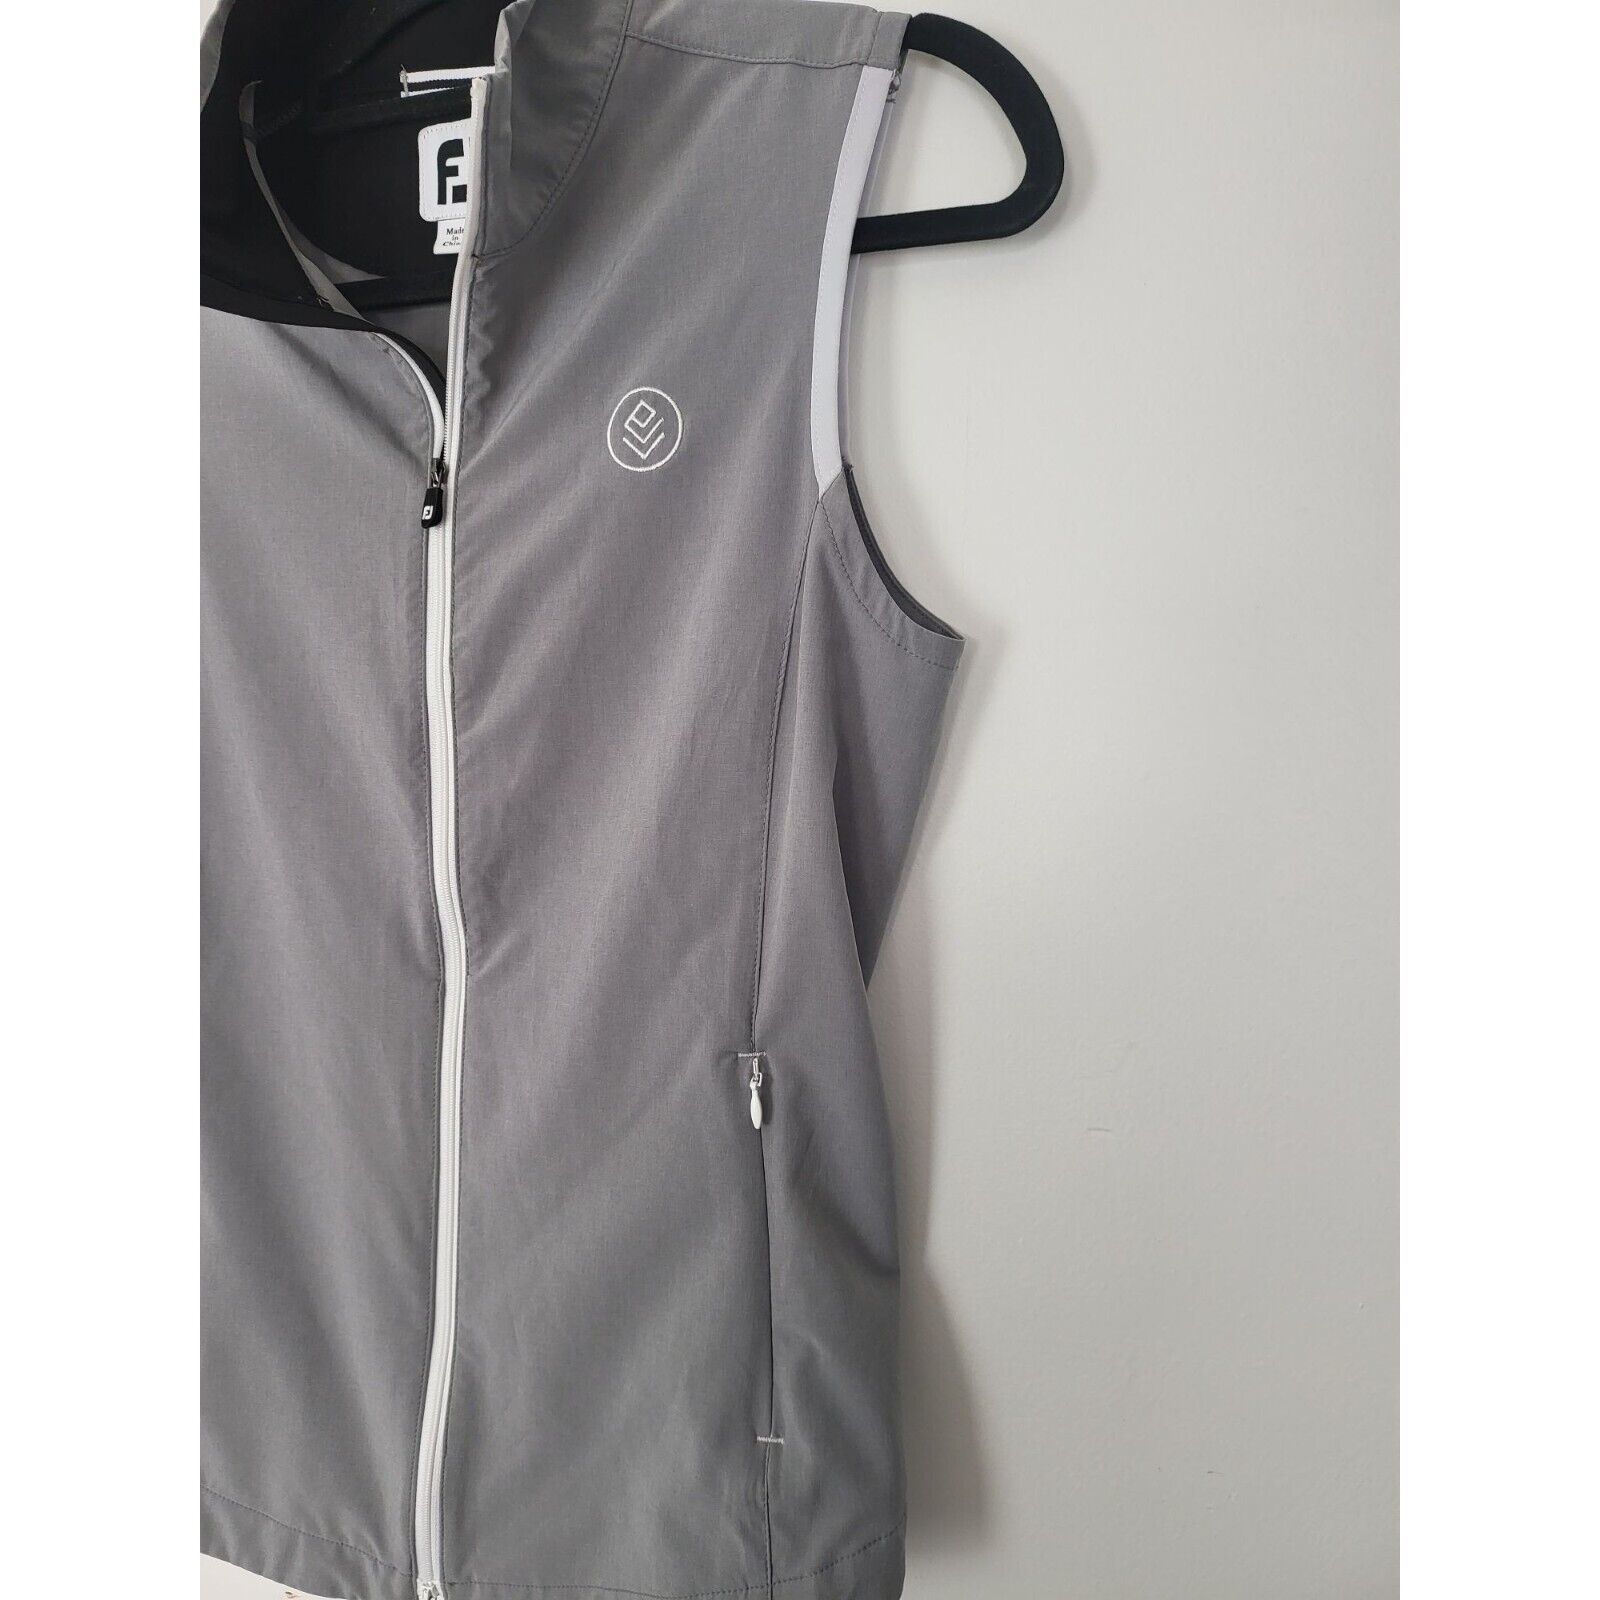 Footjoy Lightweight Vest Medium Womens Grey Golf Full Zip Pockets Sleeveless - $25.43